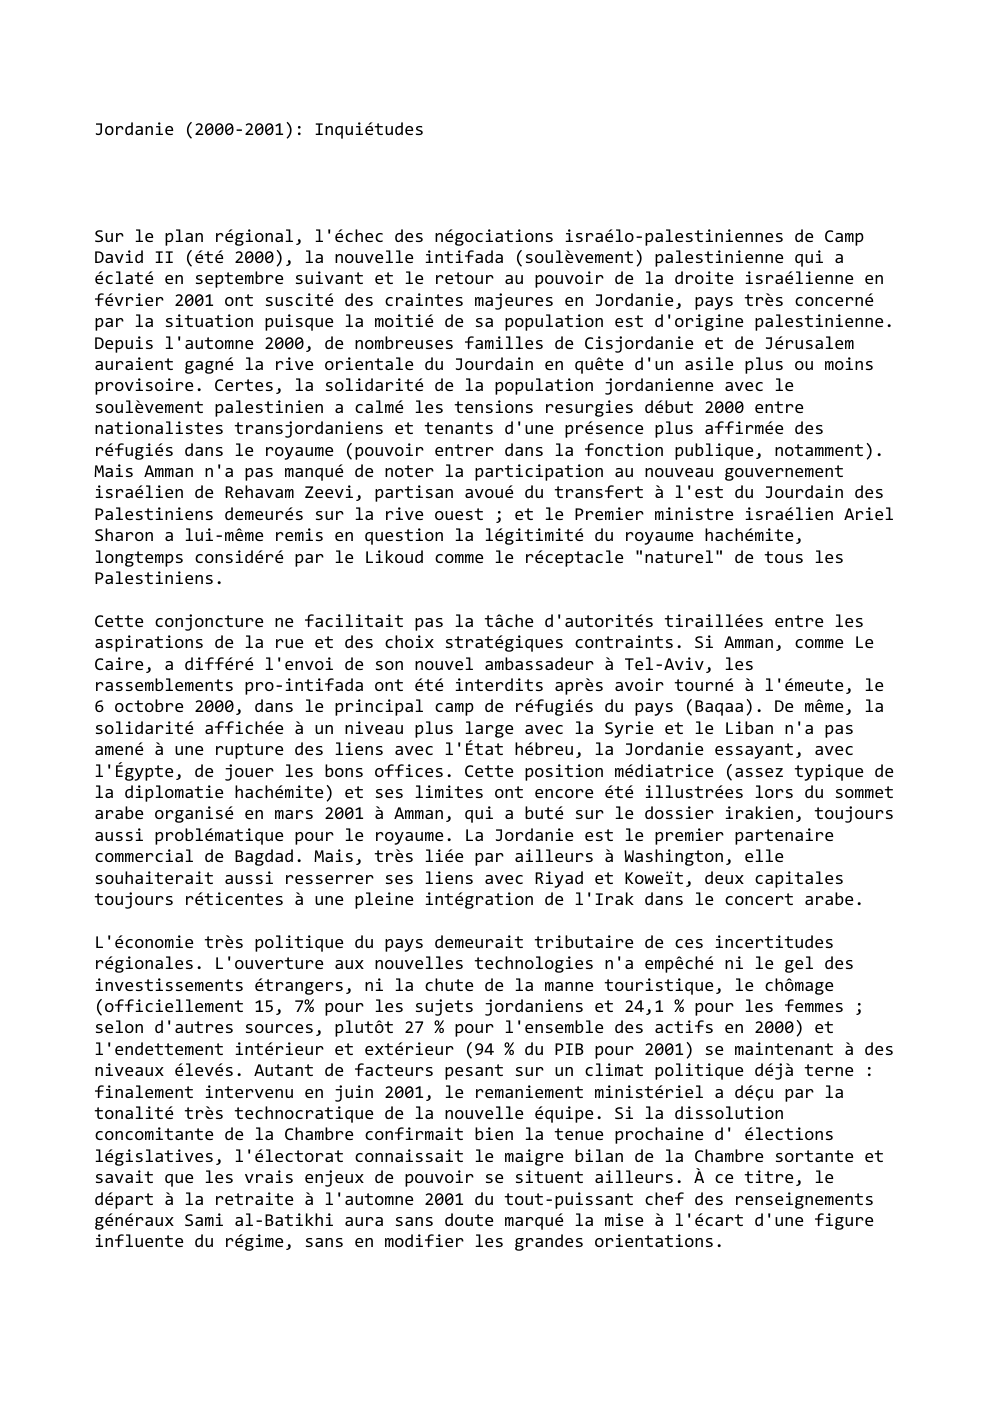 Prévisualisation du document Jordanie (2000-2001): Inquiétudes

Sur le plan régional, l'échec des négociations israélo-palestiniennes de Camp
David II (été 2000), la nouvelle intifada...